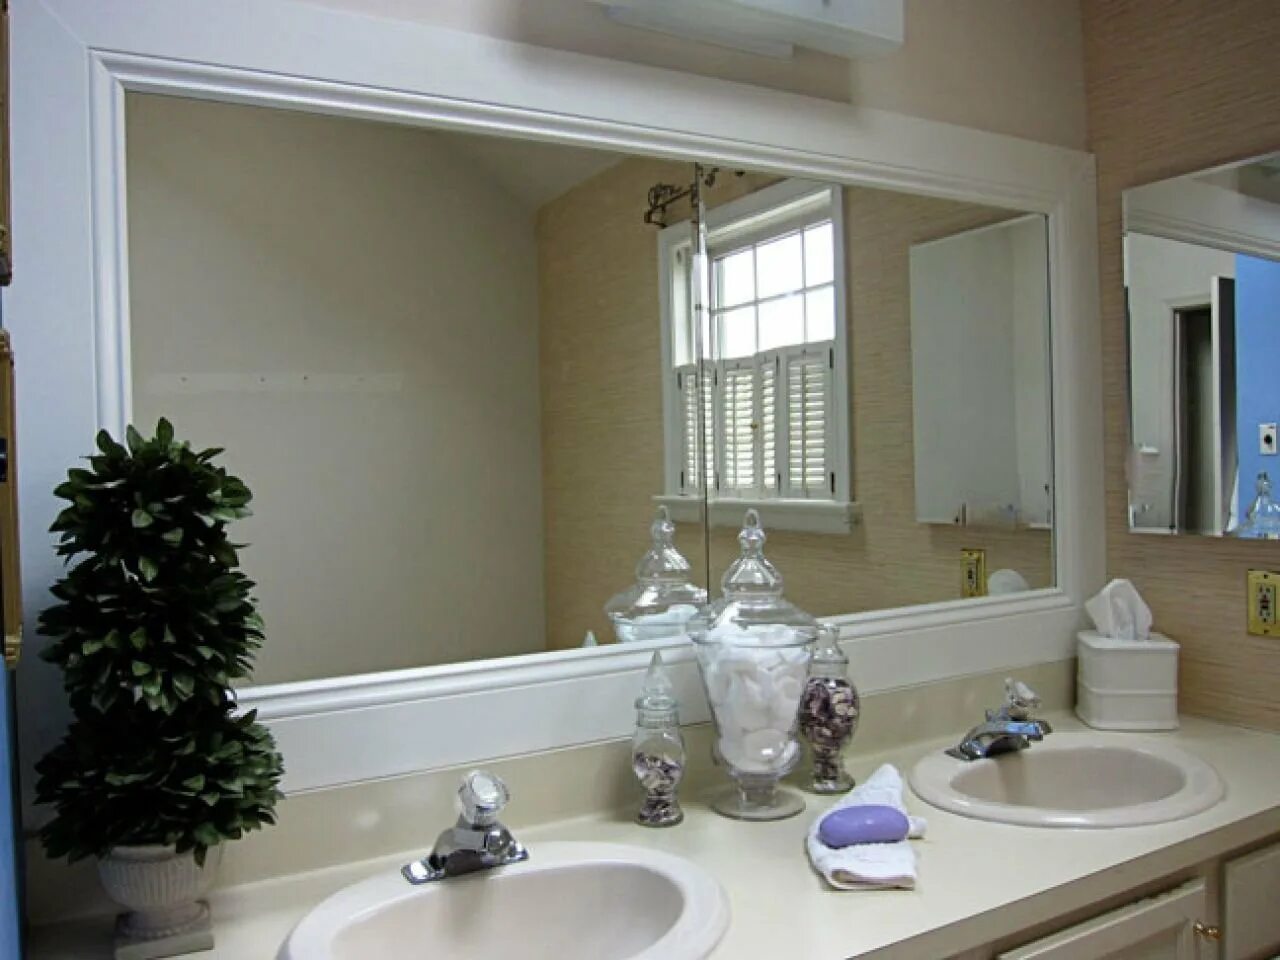 Ванная комната с большим зеркалом. Зеркало в интерьере ванной комнаты. Большое зеркало в ванную. Молдинги в ванной комнате.